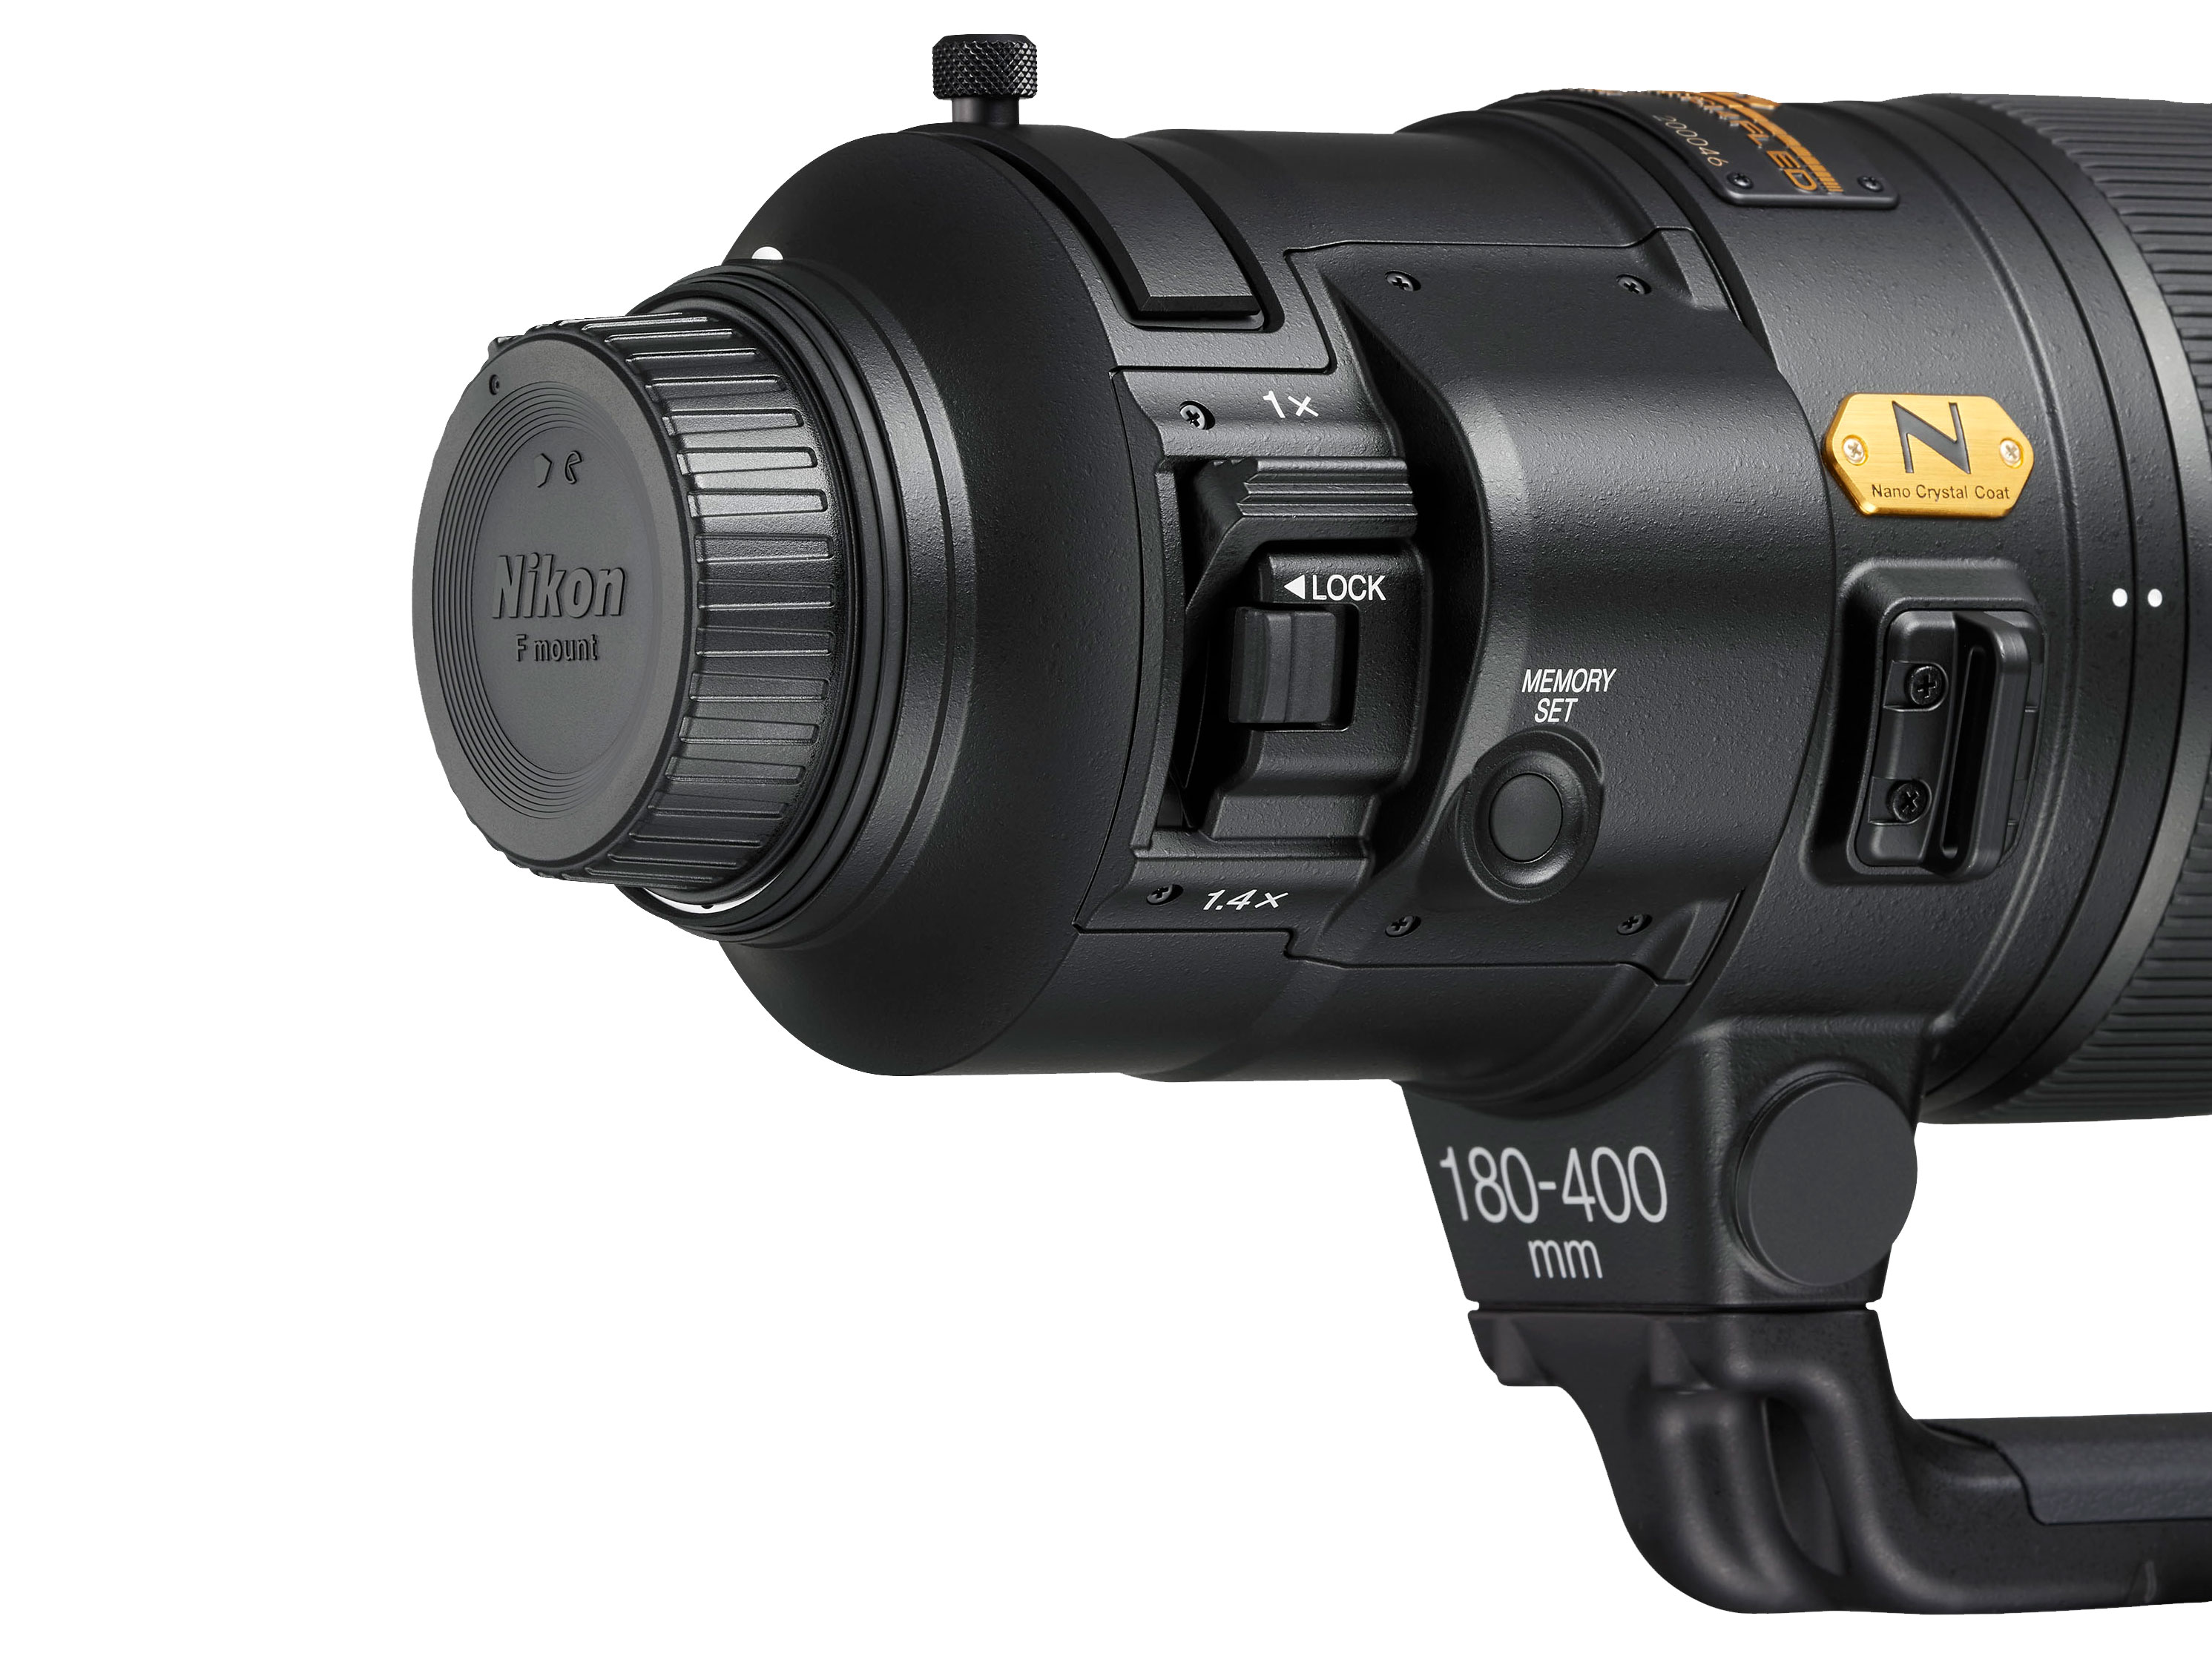 Đang tải Nikkor 180-400mm F4E- Camera.tinhte.vn 1.jpg…